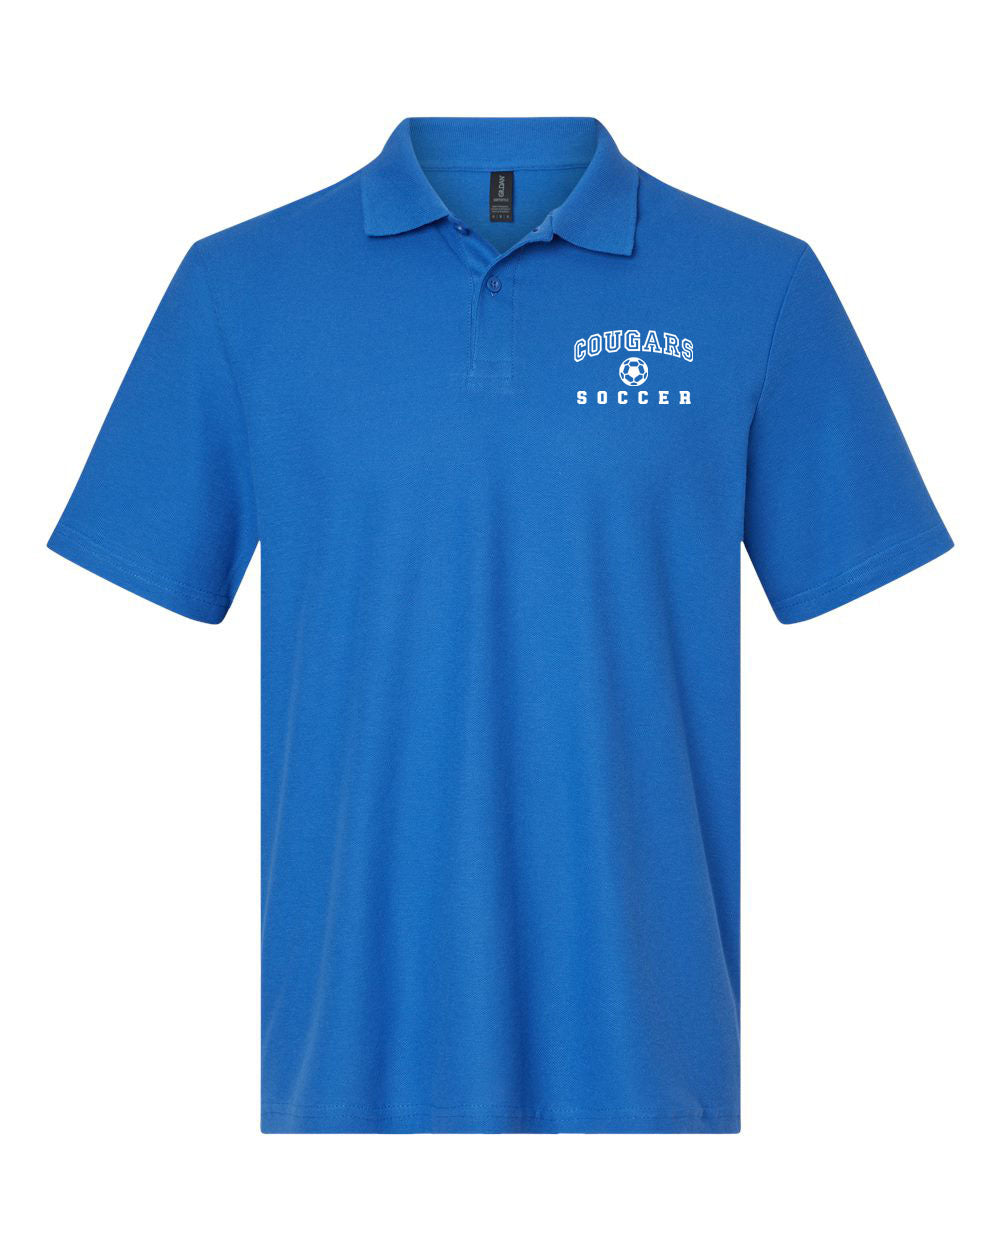 Kittatinny Soccer Design 1 Polo T-Shirt